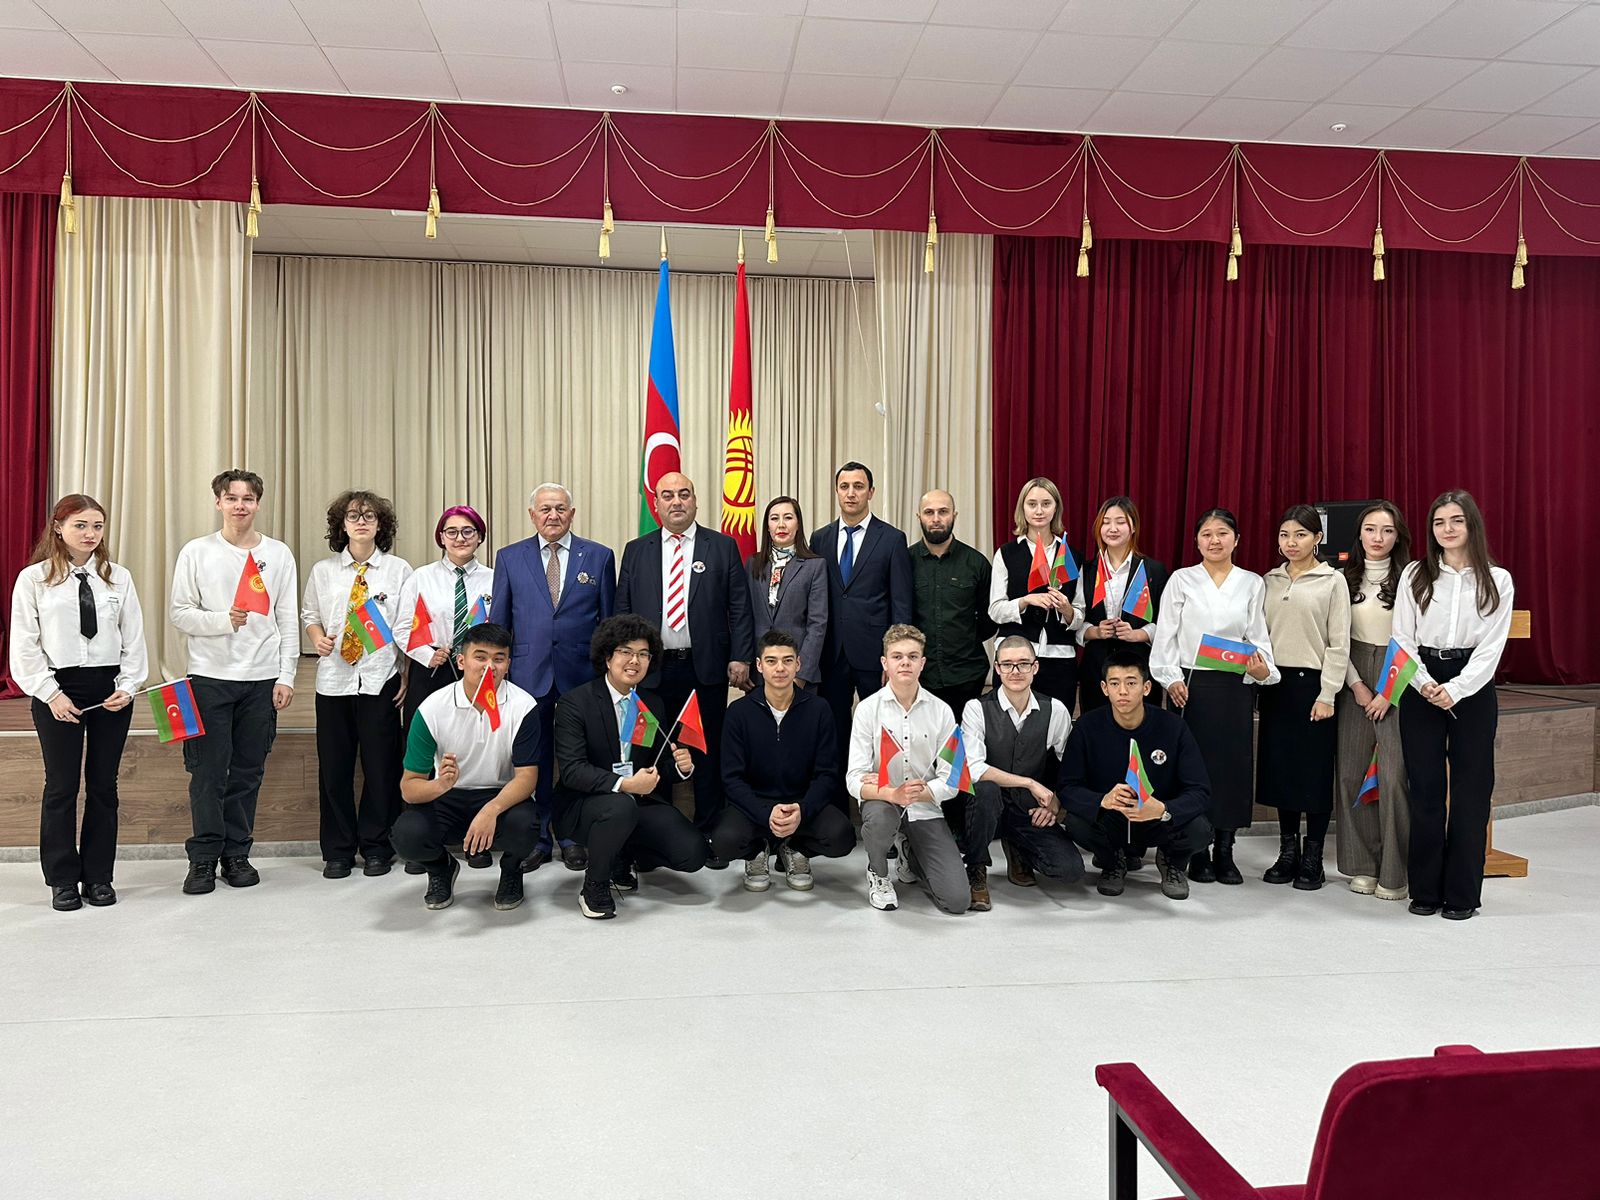 Qırğız Respublikasının paytaxtı Bişkek şəhərində “Heydər Əliyevin həyatının 100 anı” kitabının təqdimatı olub